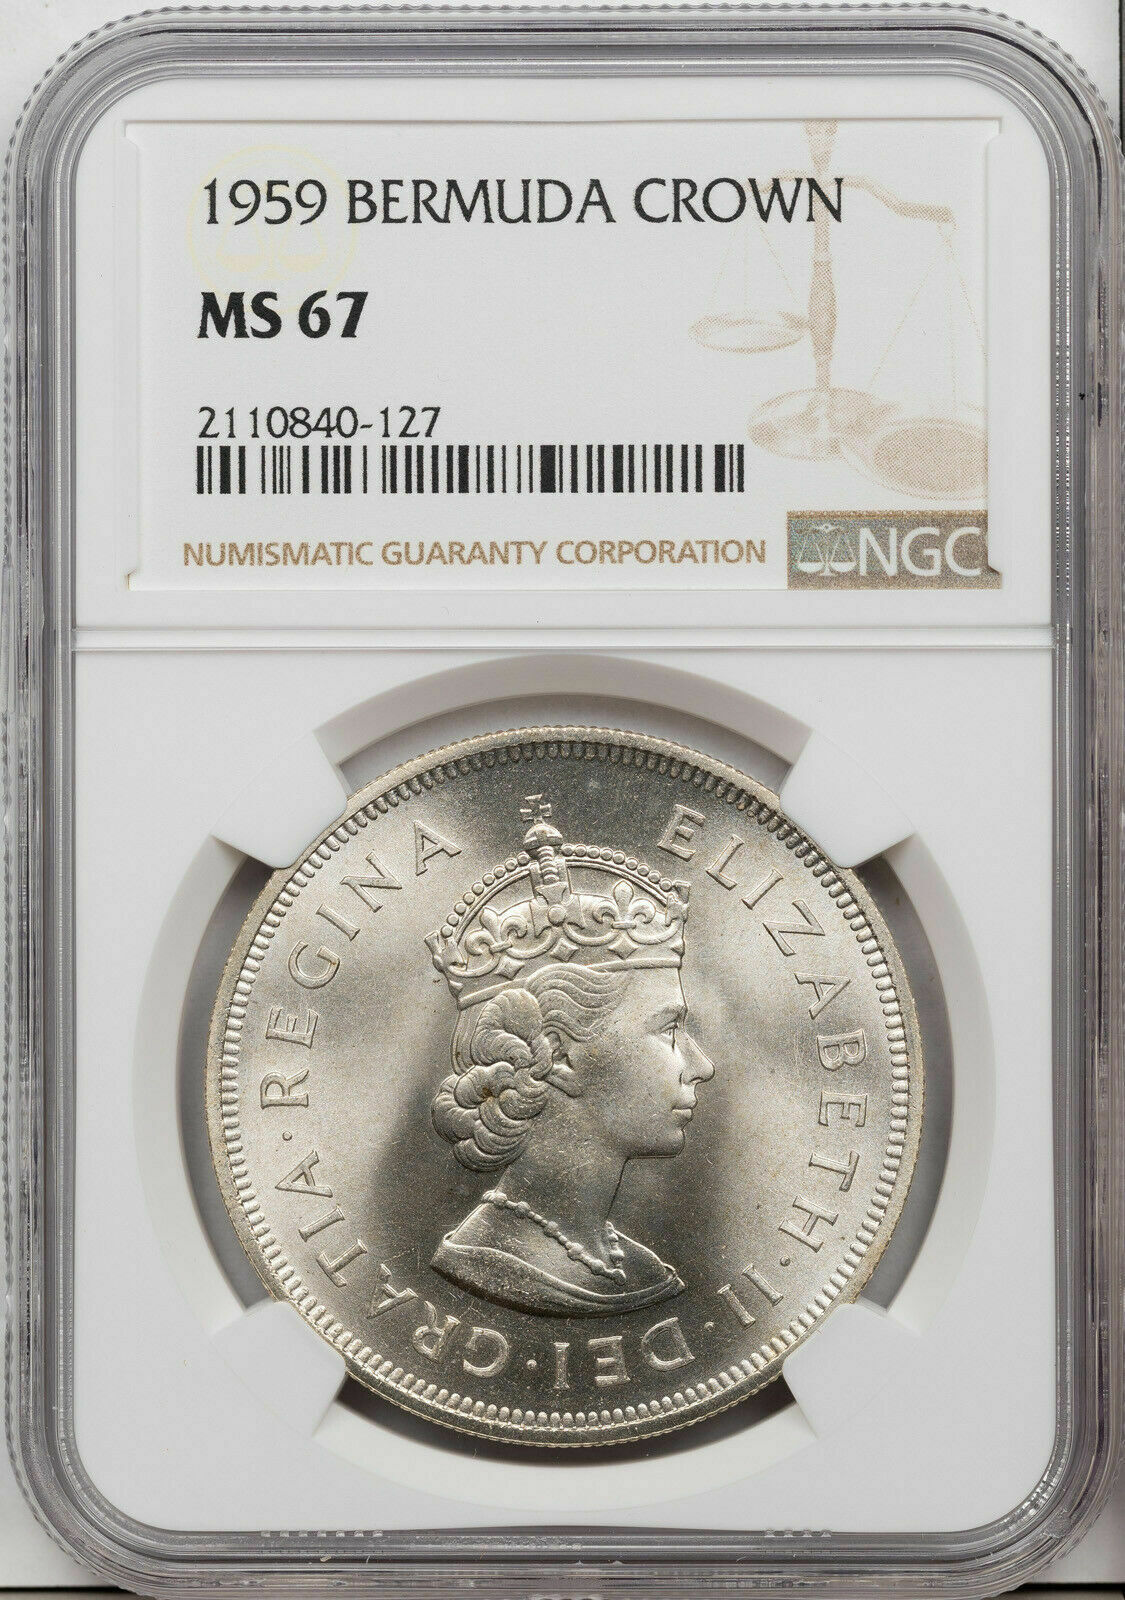 1959 Bermuda Crown Silver Ngc Ms 67 High Grade Coin